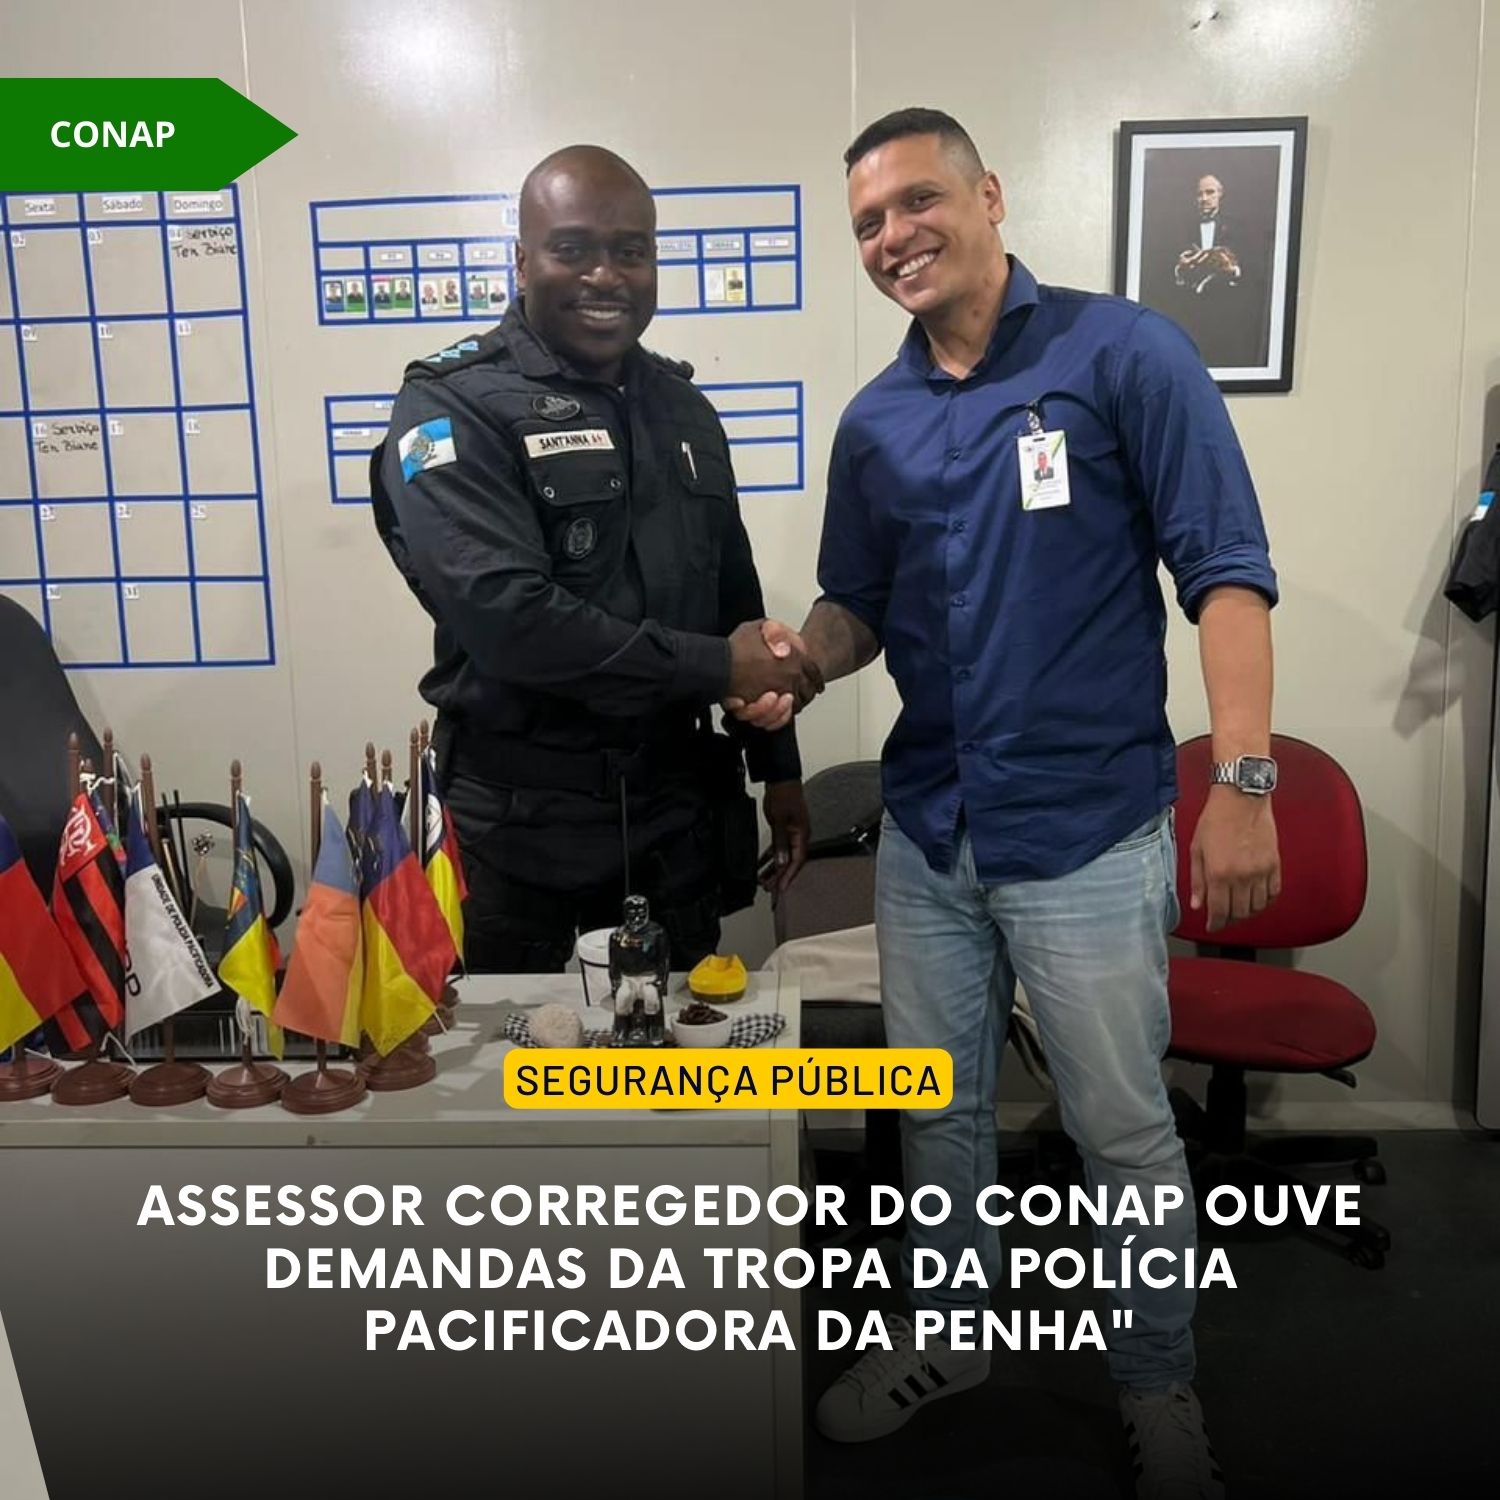 Assessor corregedor do CONAP ouve demandas da tropa da Polícia Pacificadora da Penha